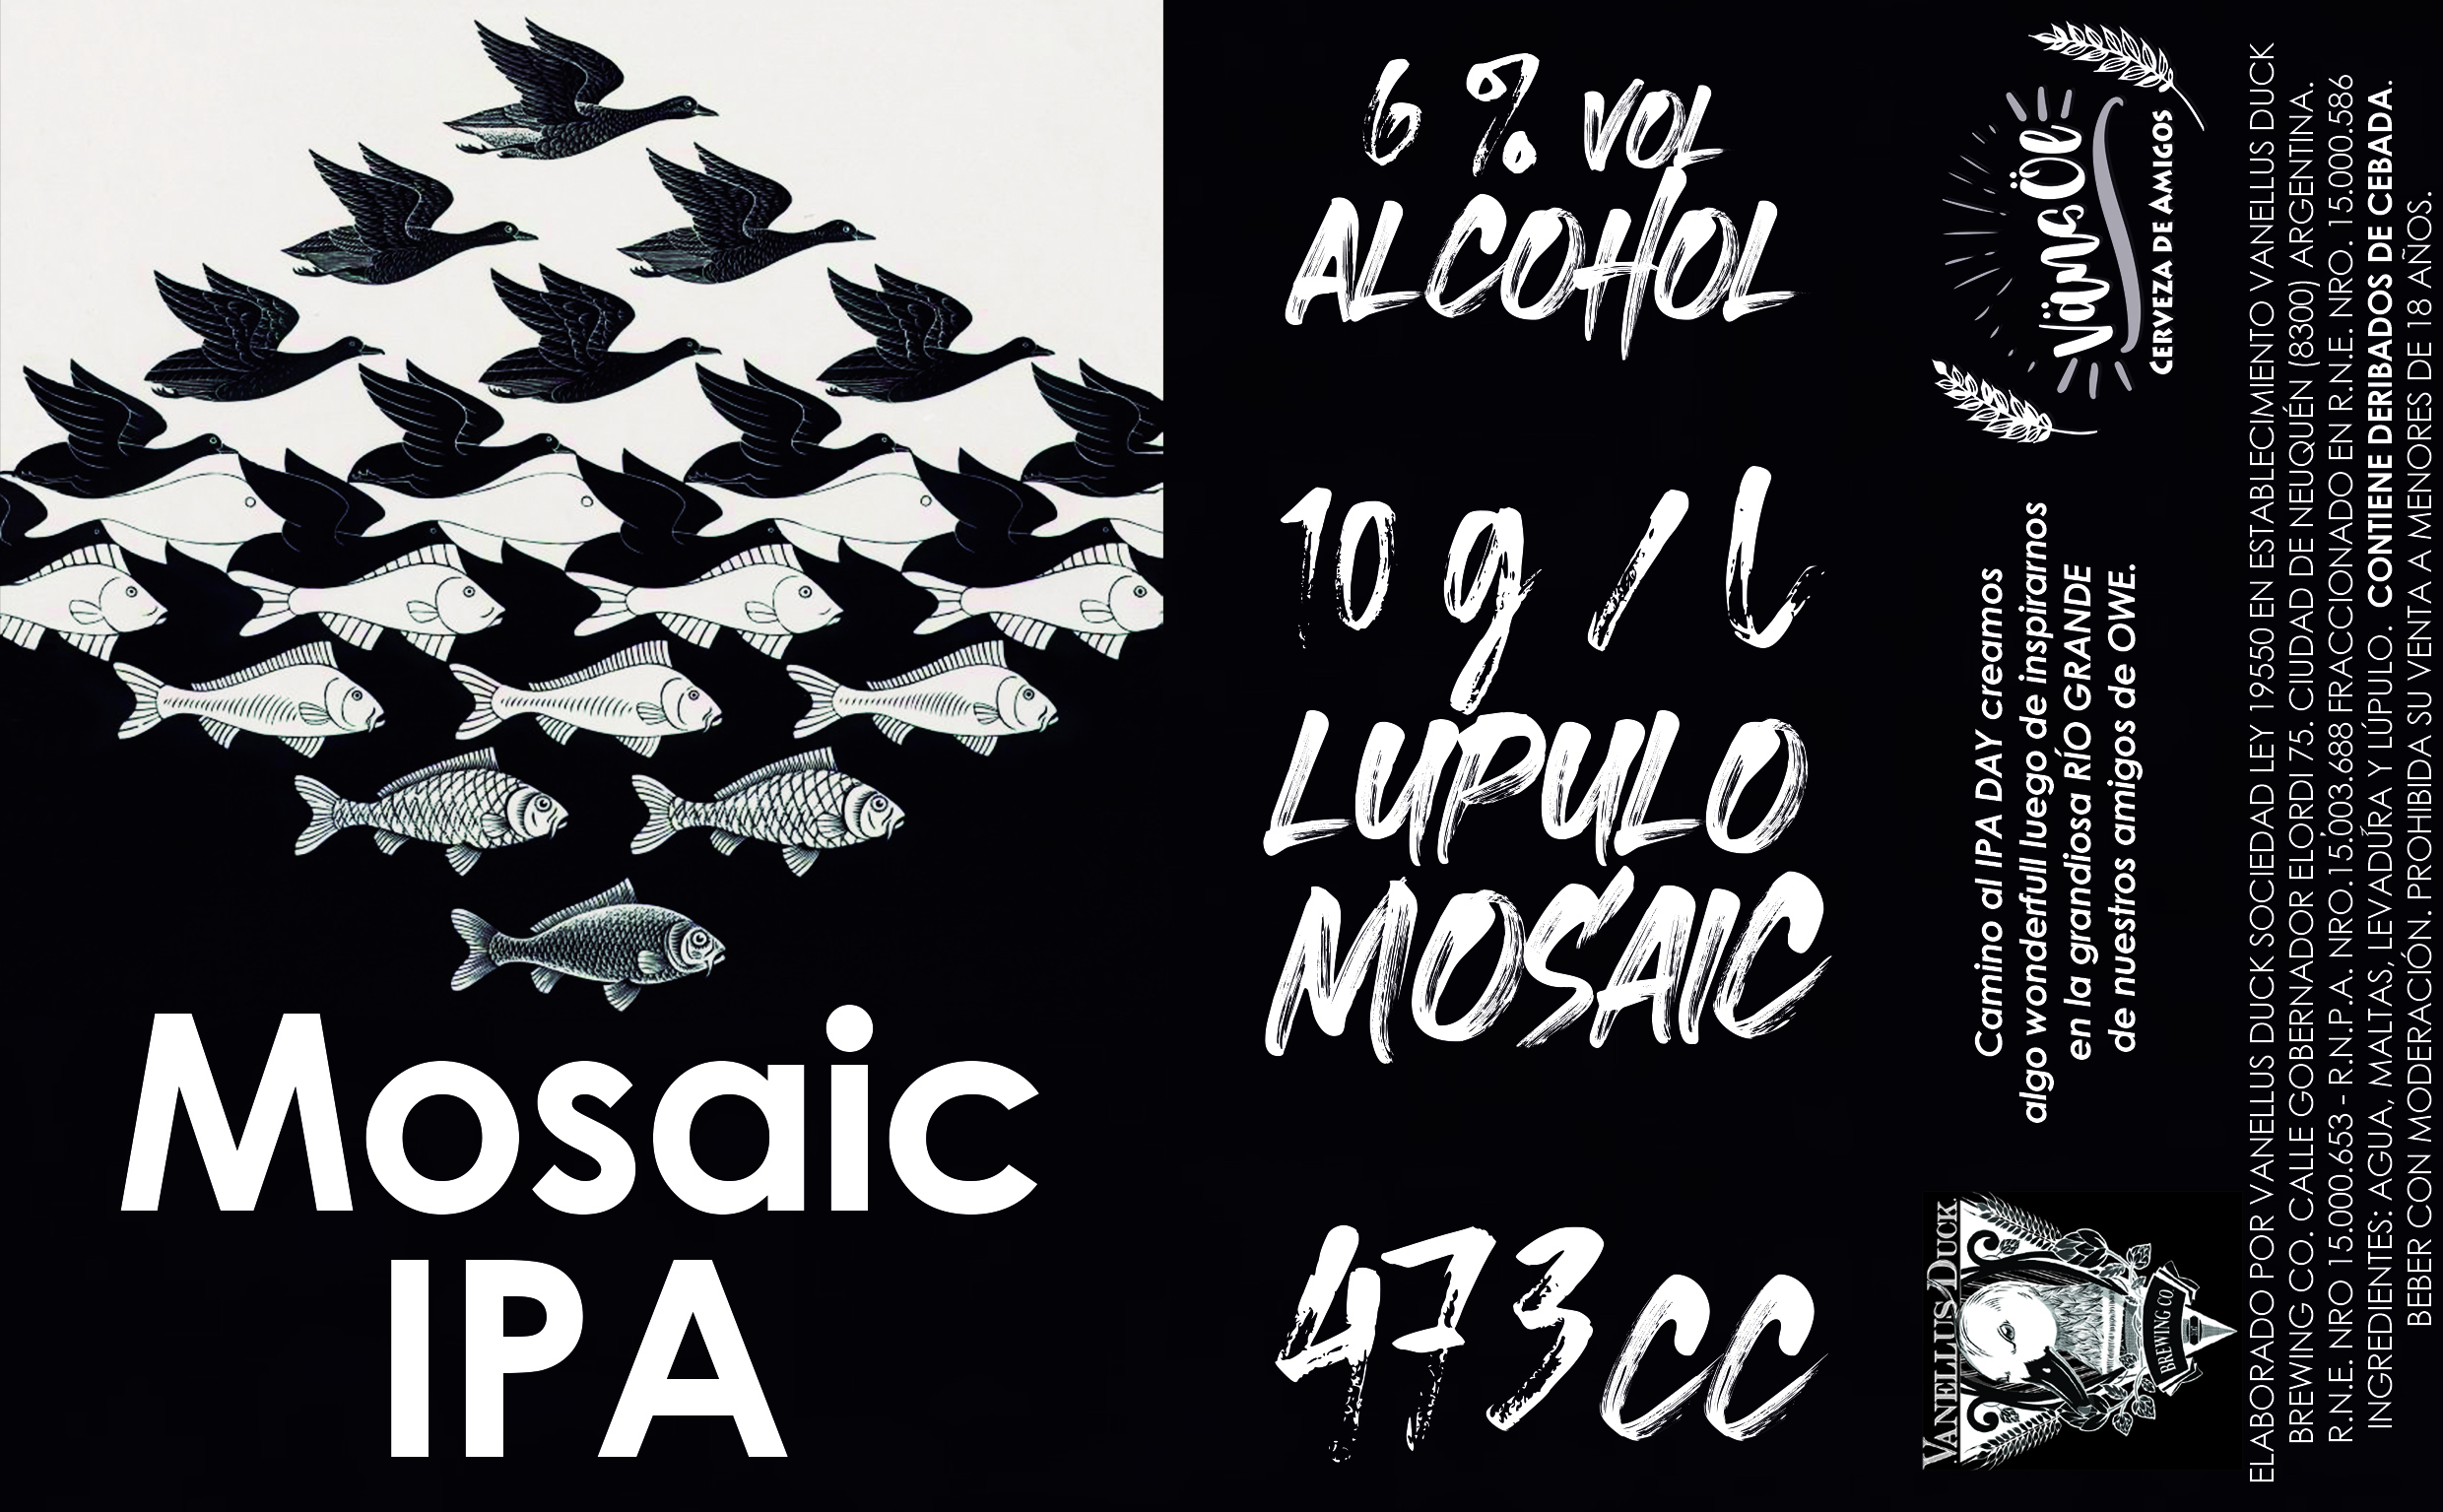 Mosaic Ipa